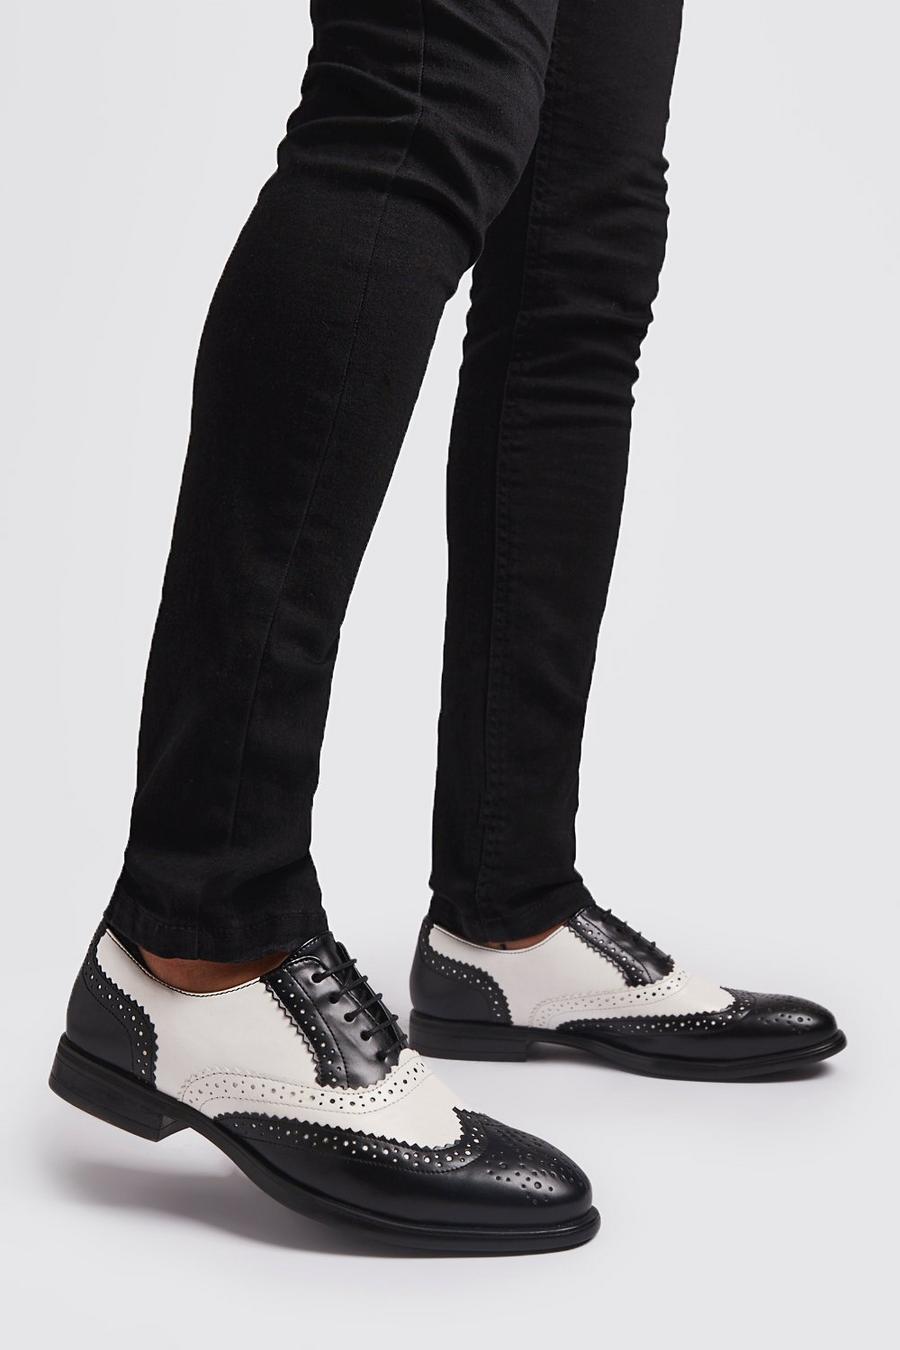 Zapato calado de piel sintética negra y blanca, Blanco image number 1